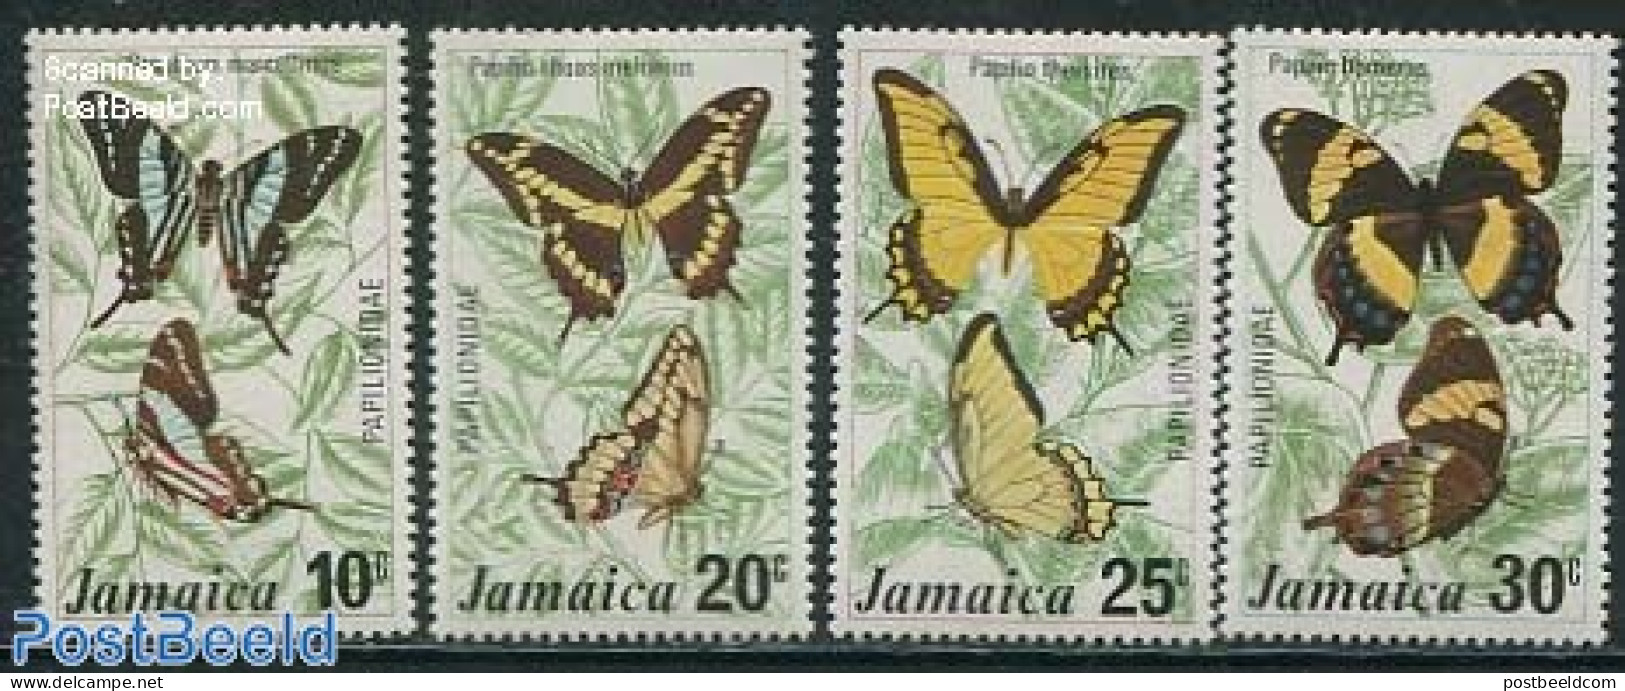 Jamaica 1975 Butterflies 4v, Mint NH, Nature - Butterflies - Jamaica (1962-...)